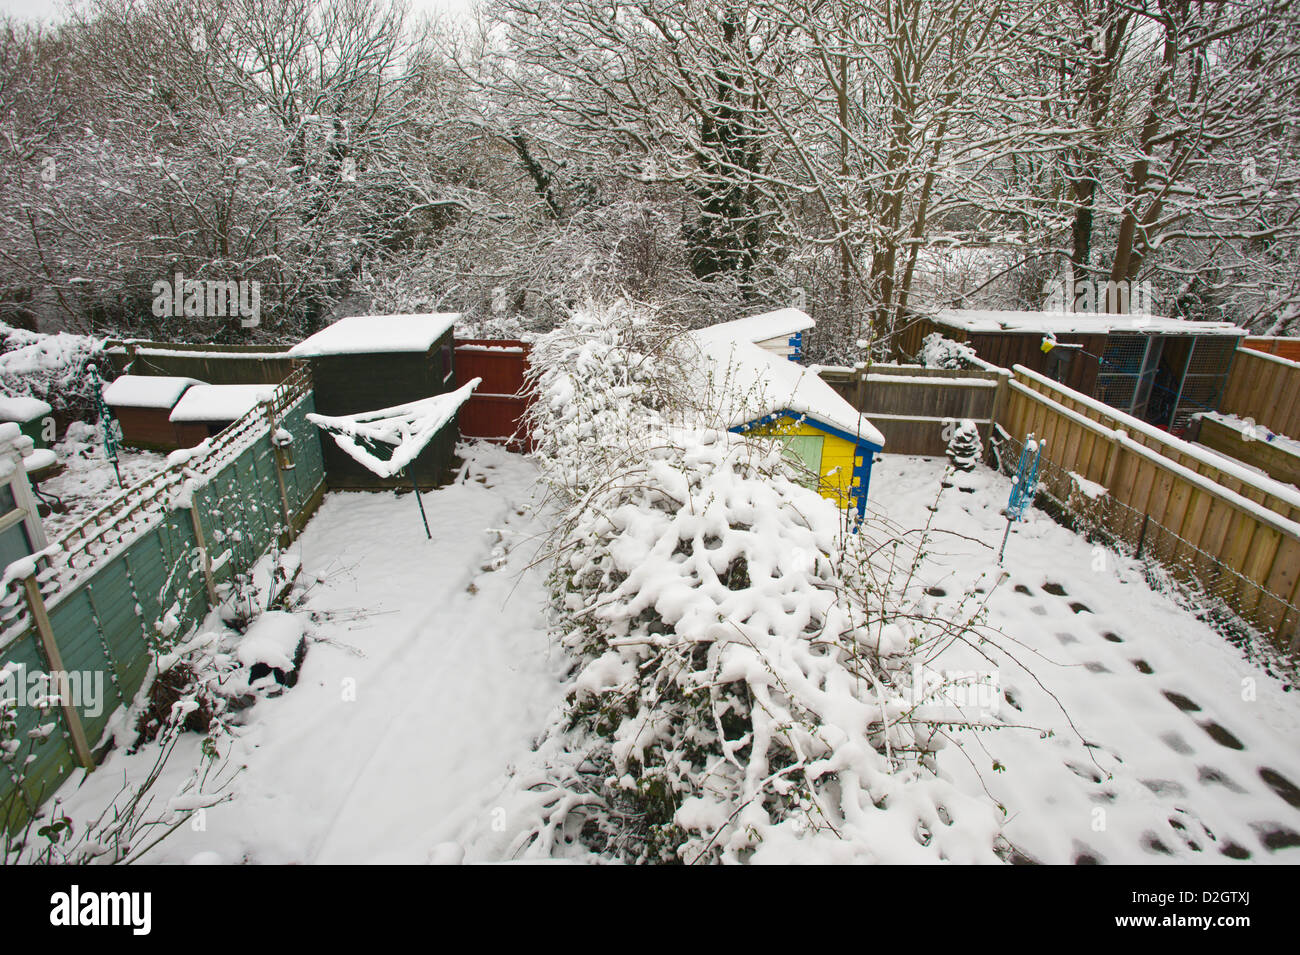 Maison de jardin couvert de neige à Hay-on-Wye Powys Pays de Galles UK Banque D'Images